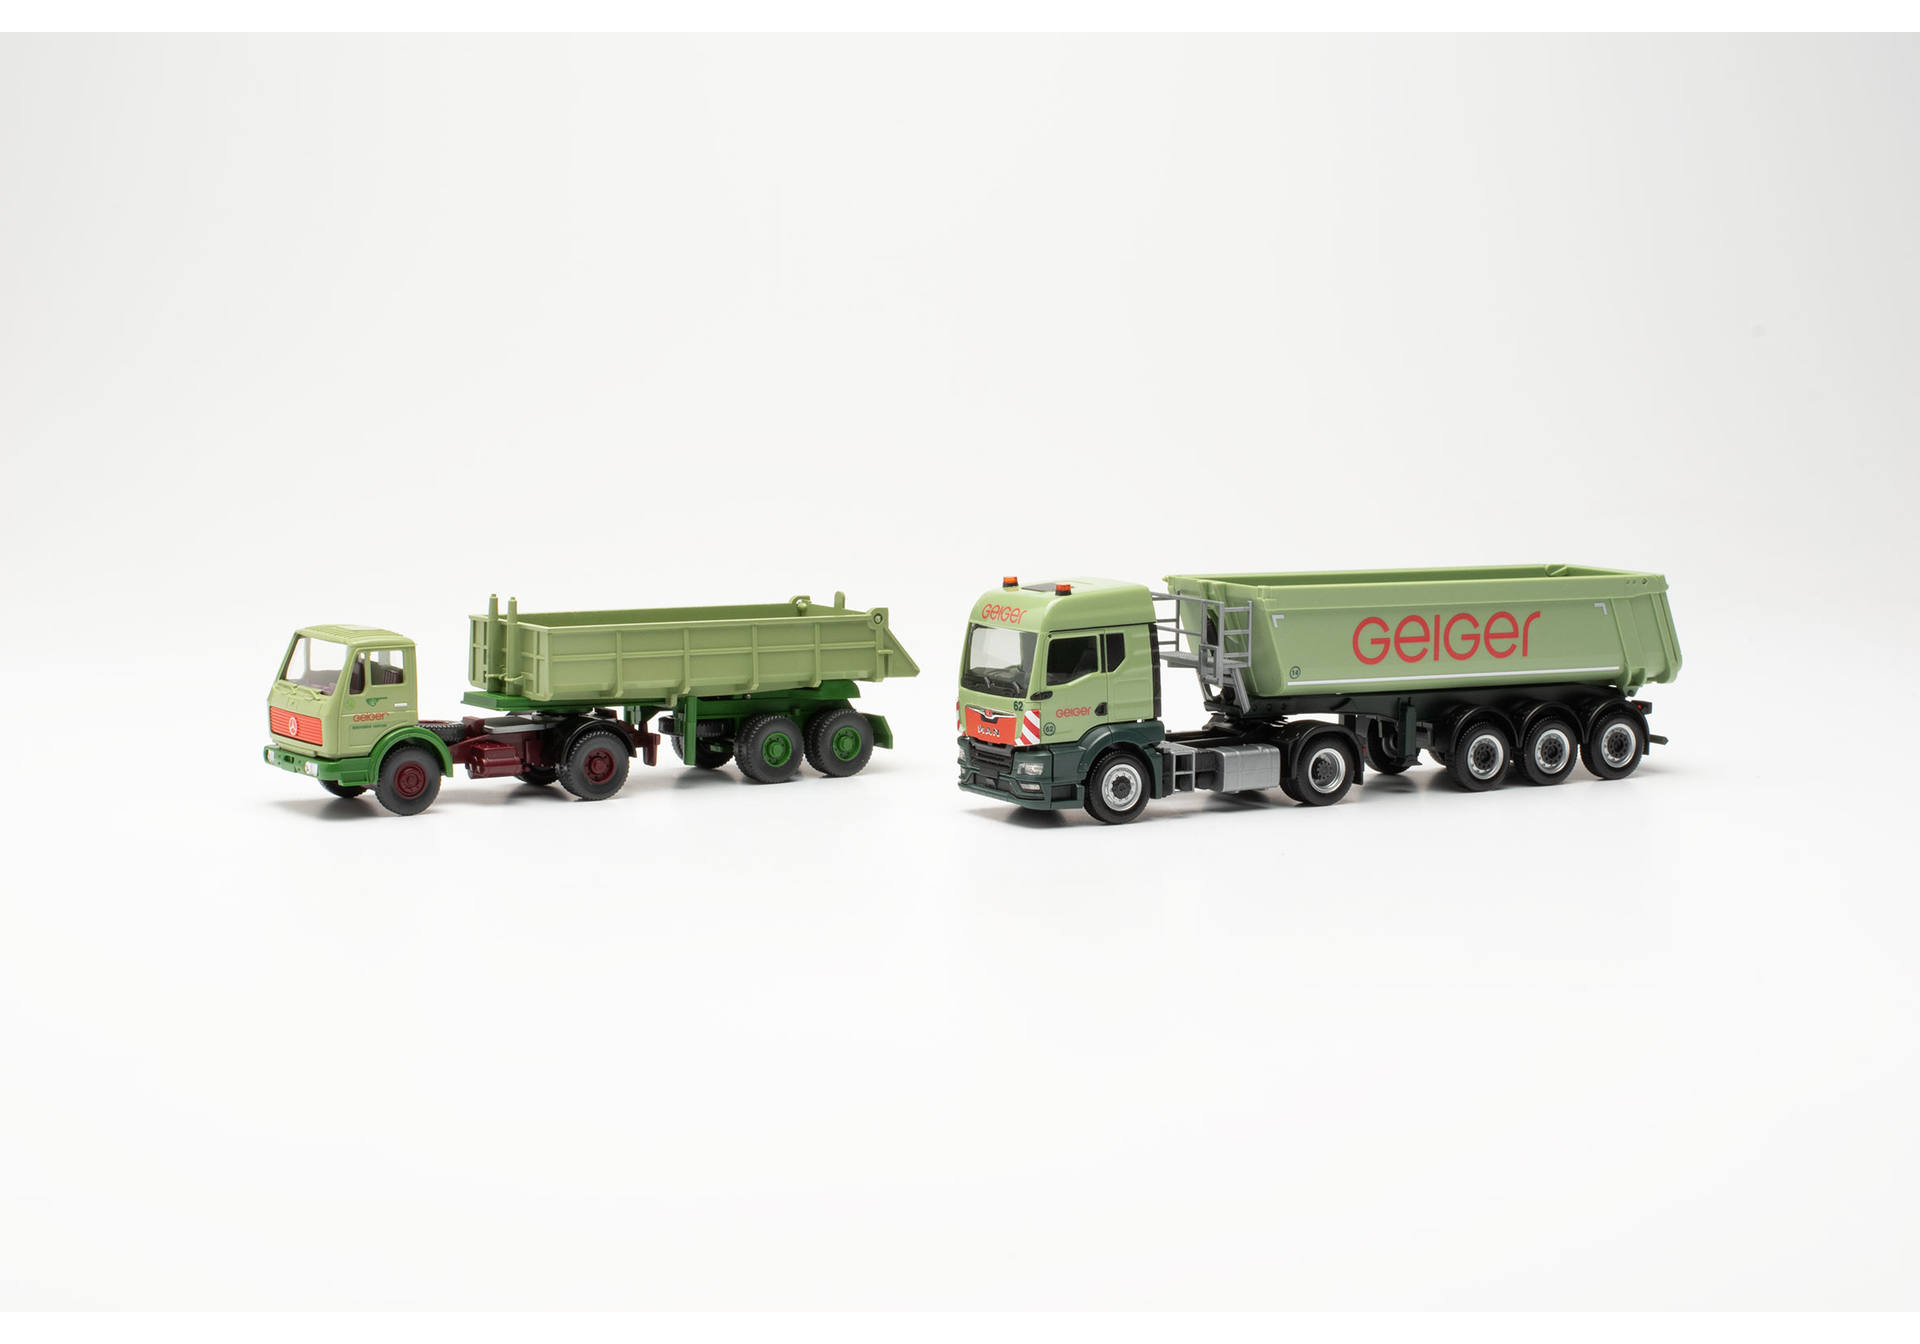 Set: MAN TGS TM Schmitz dumper semitrailer truck and Mercedes-Benz dumper semitrailer truck (Wiking model) "100 Jahre Geiger" (Bayern/Oberstdorf)